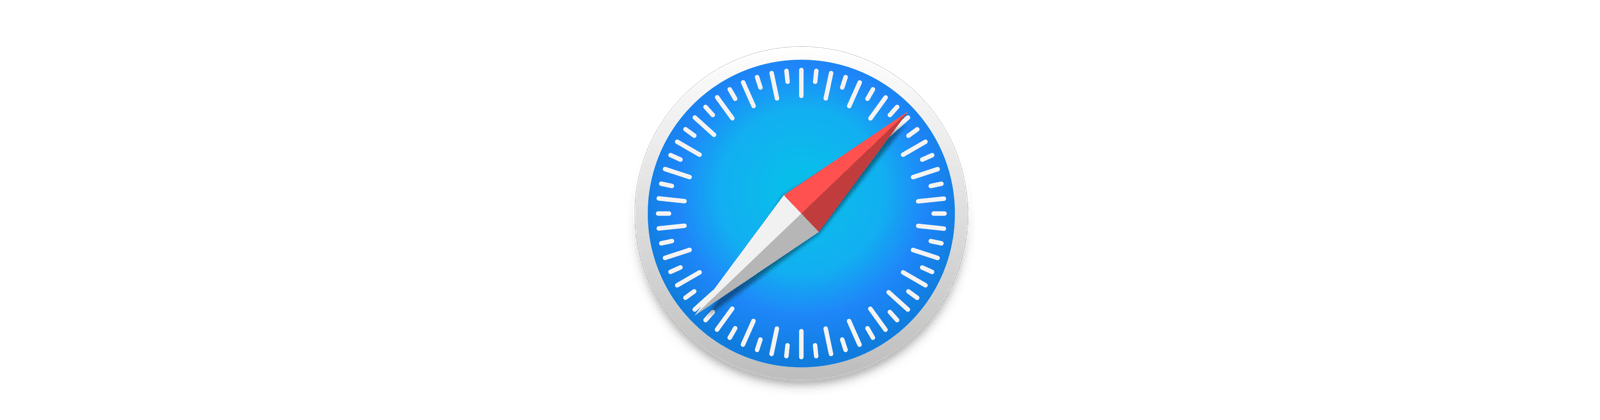 Safari Opens Zip Files - Prop